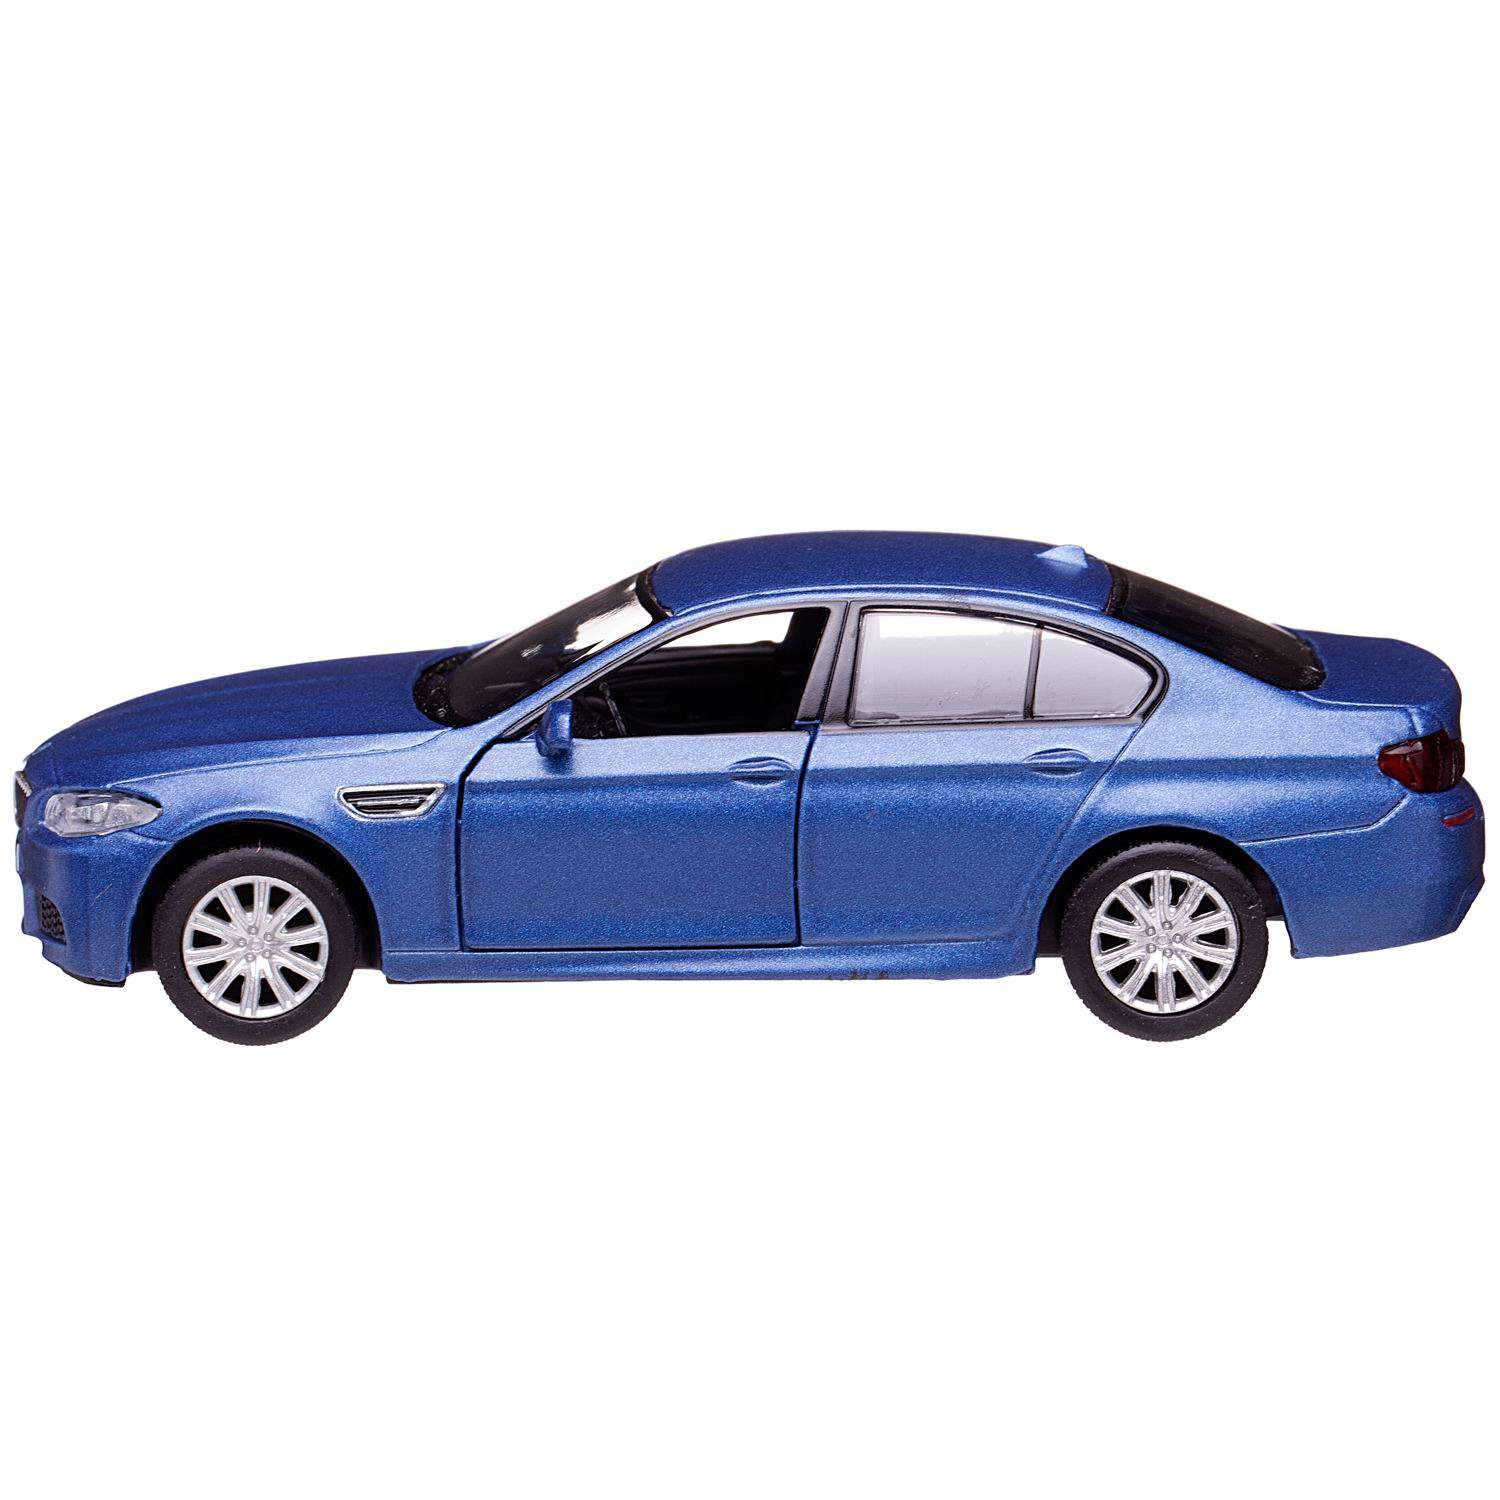 Машина металлическая Uni-Fortune BMW M5 инерционная голубой матовый цвет двери открываются 554004M(A) - фото 1